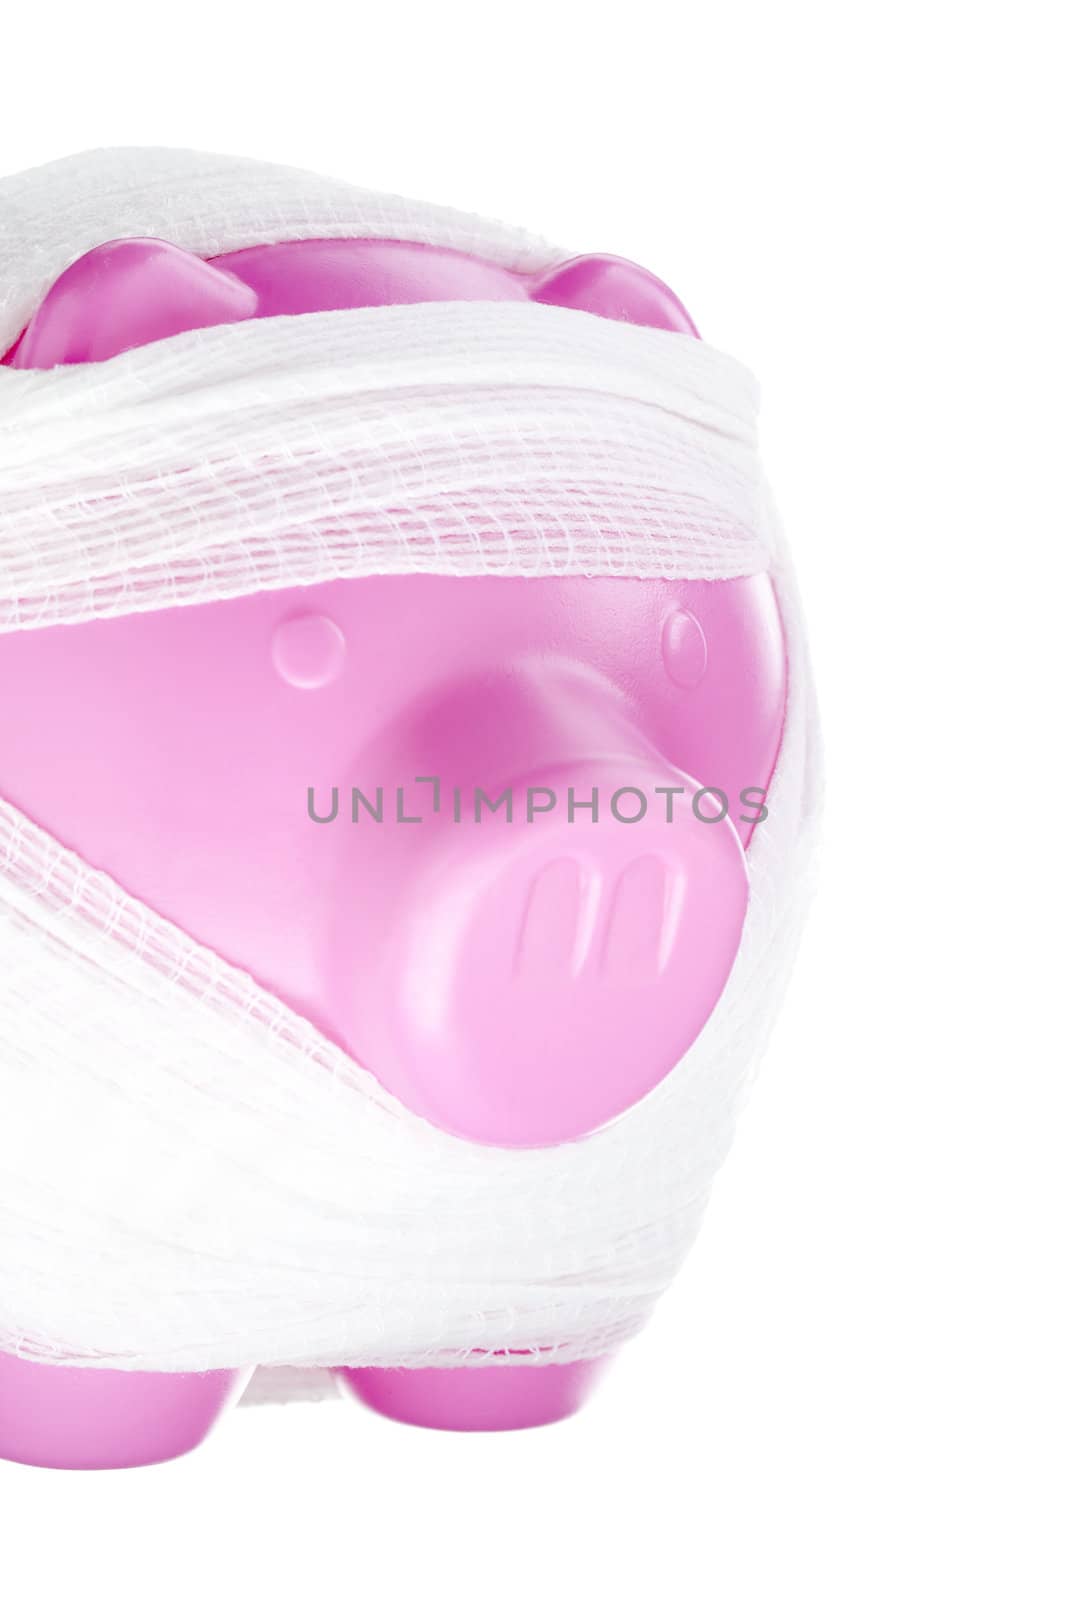 Close-up shot of bandaged piggy bank isolated on white background